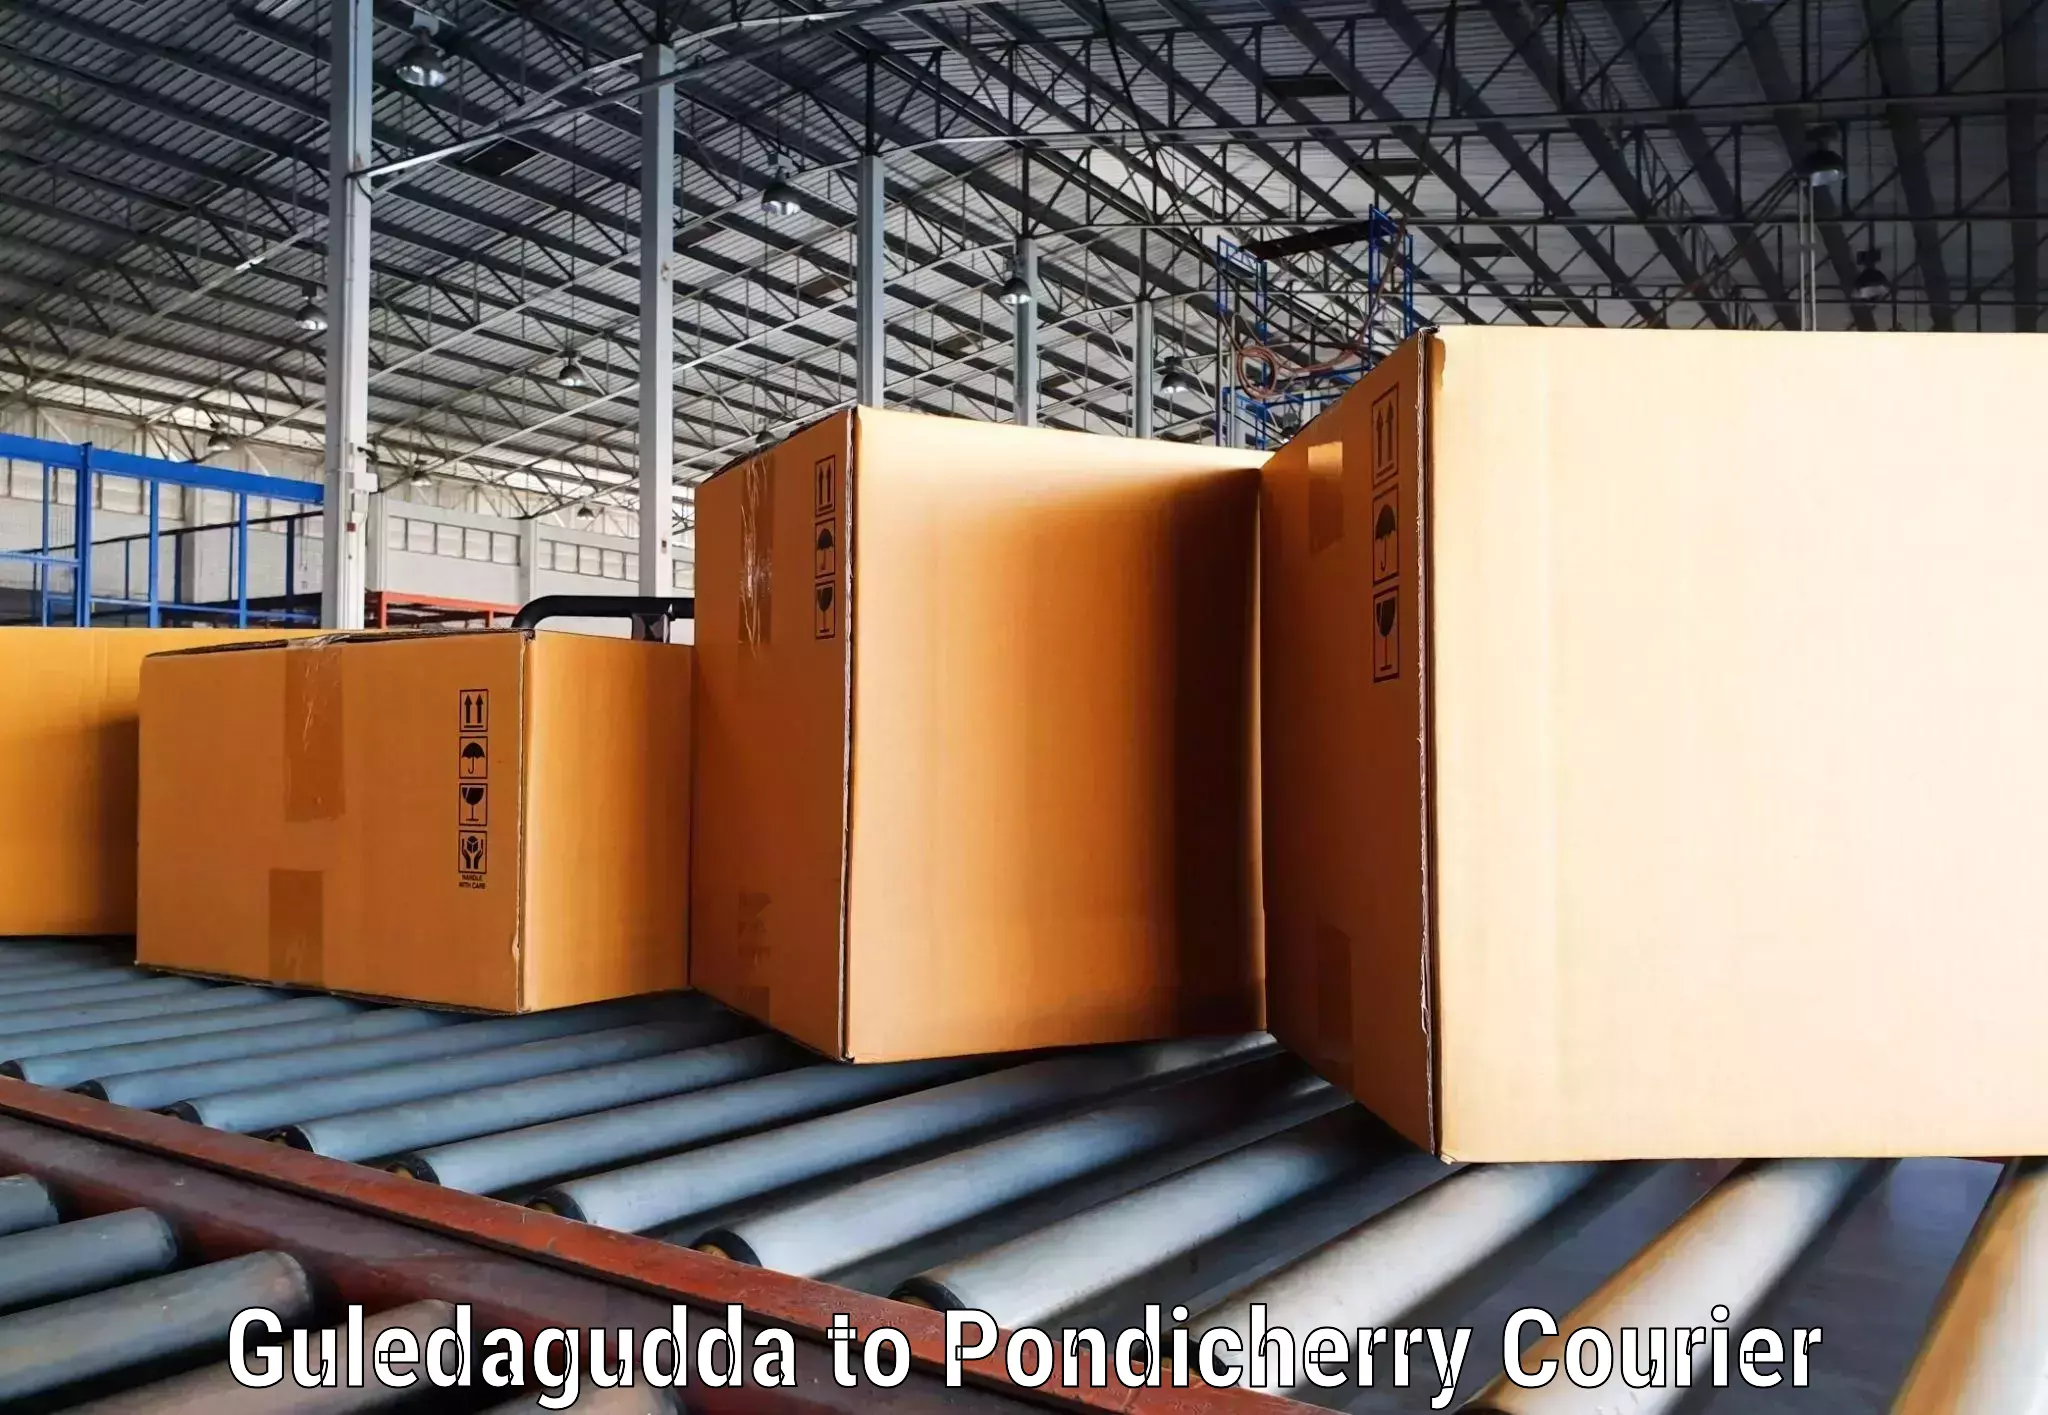 Professional courier handling Guledagudda to Pondicherry